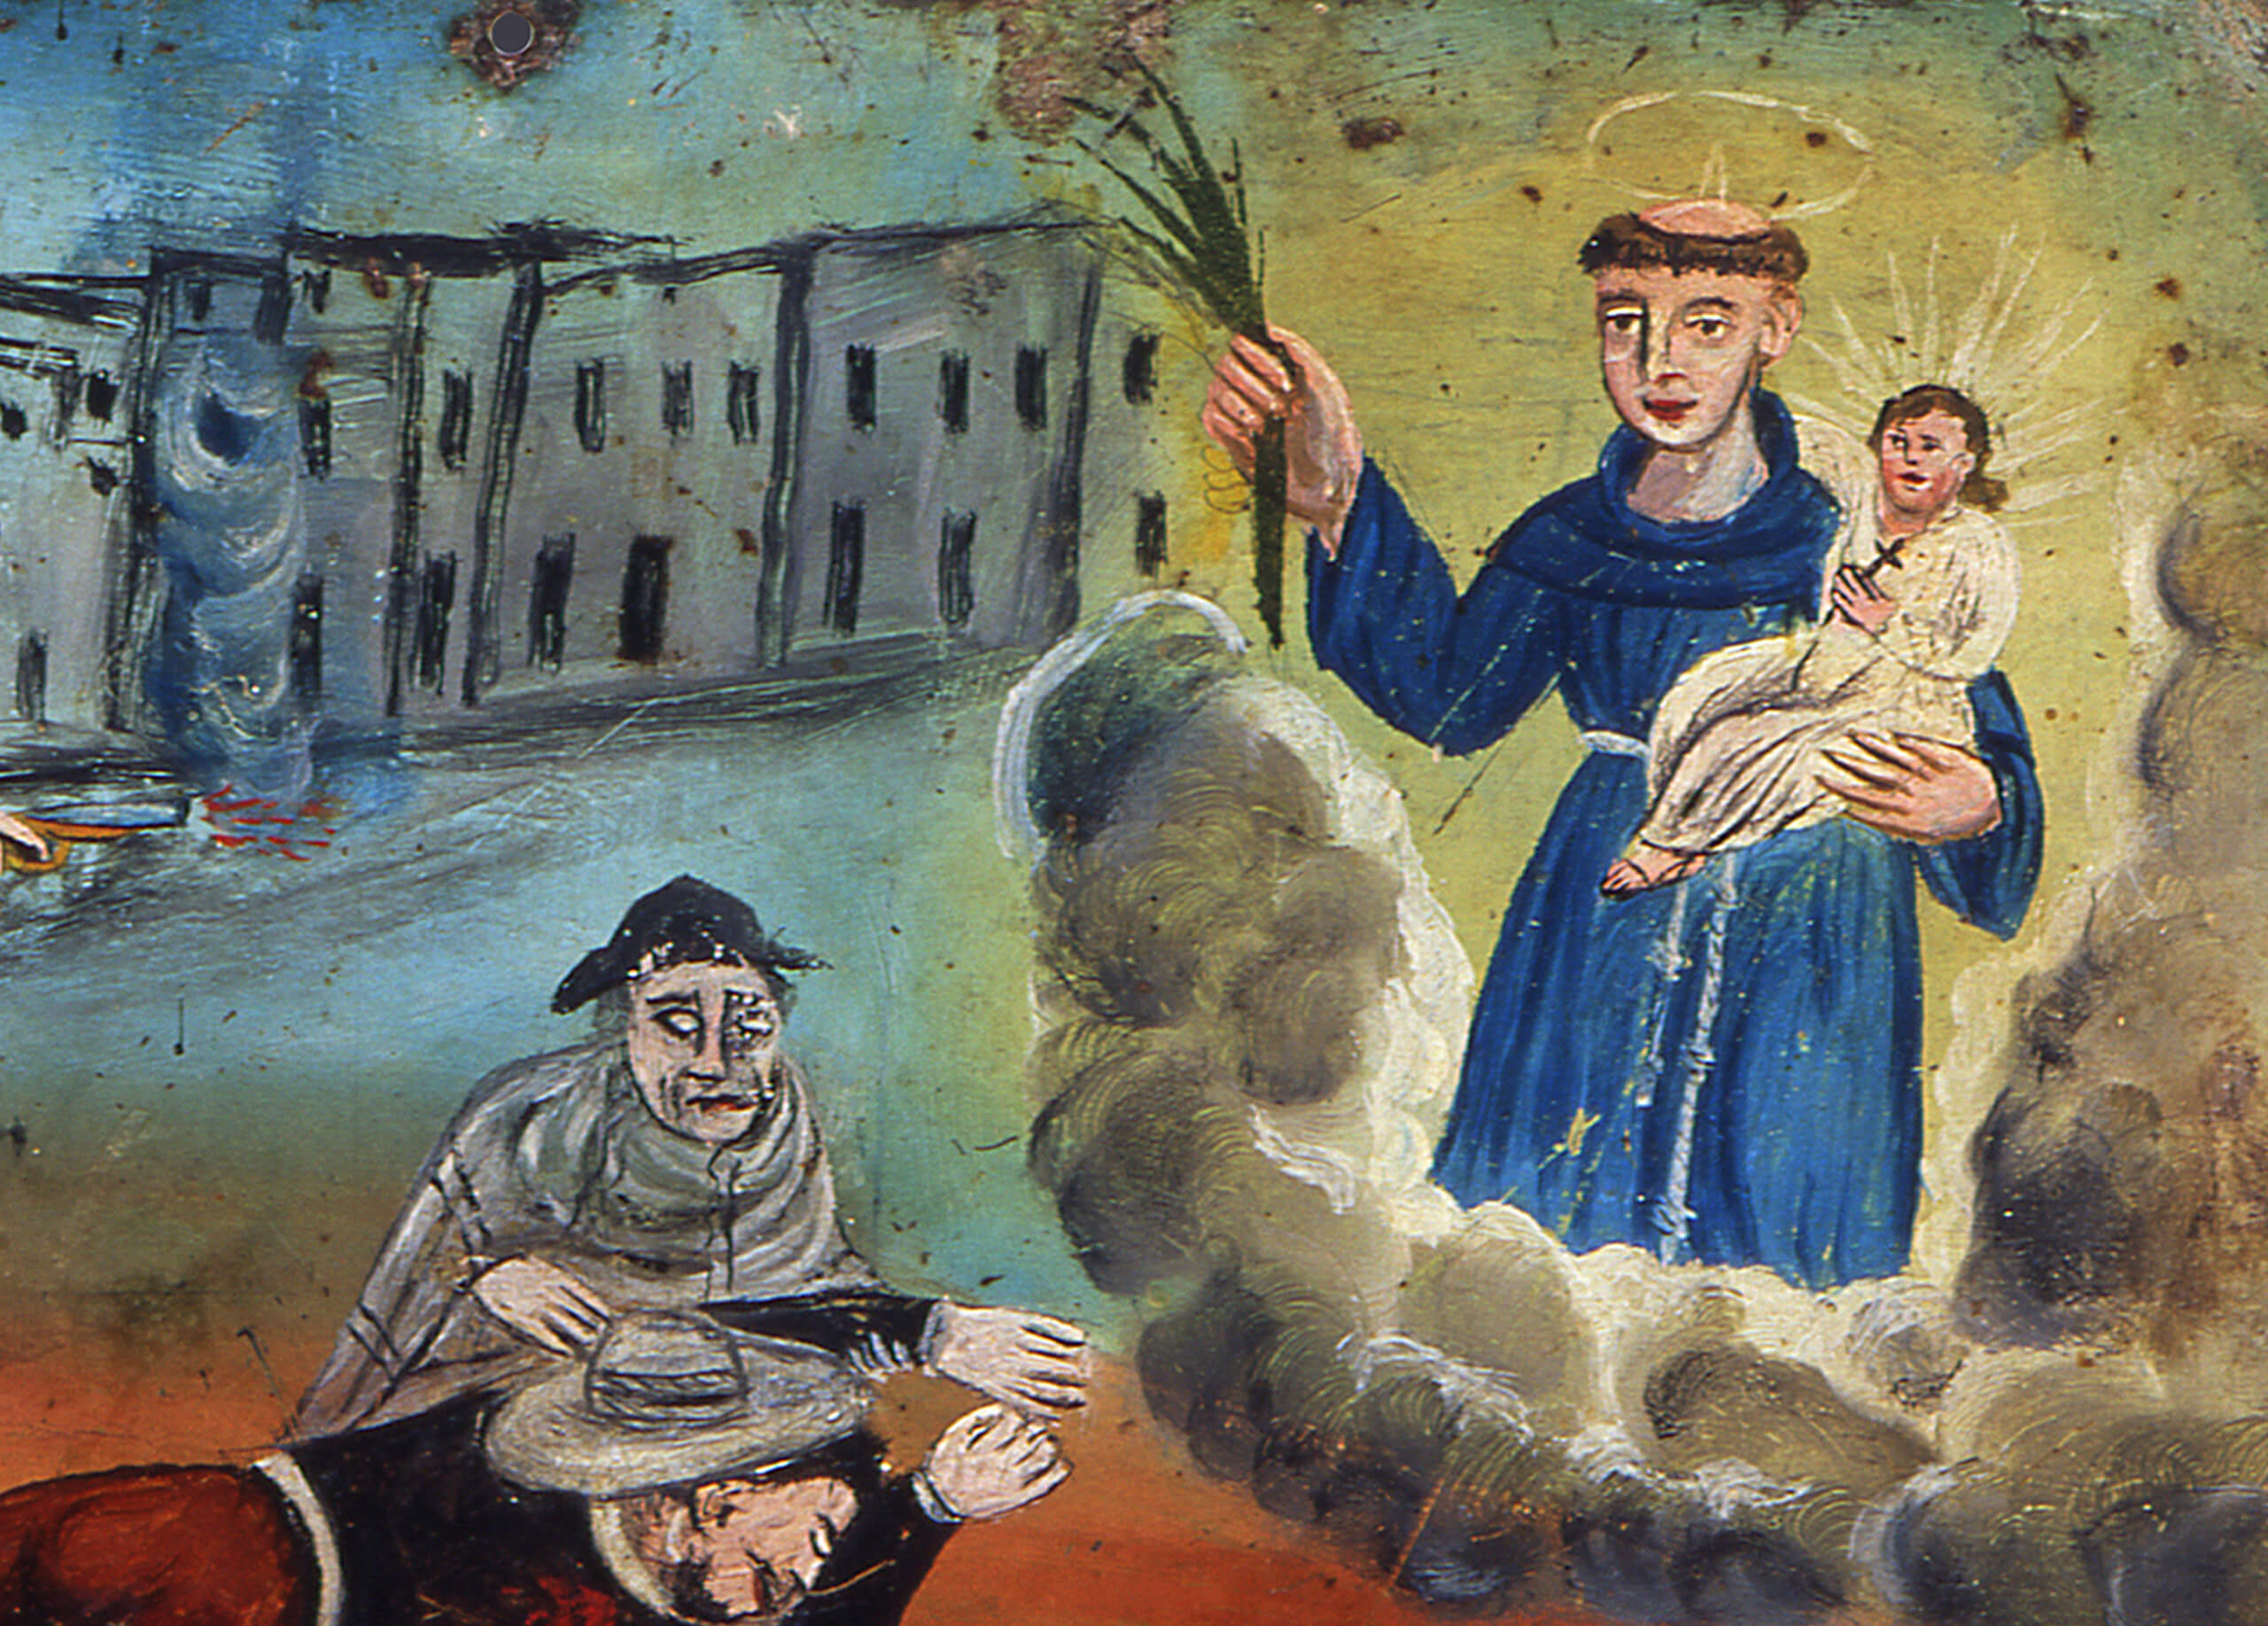 Retablo a San Antonio de Padua | Testimonios de fe: Colección de Exvotos del Museo Amparo | Museo Amparo, Puebla